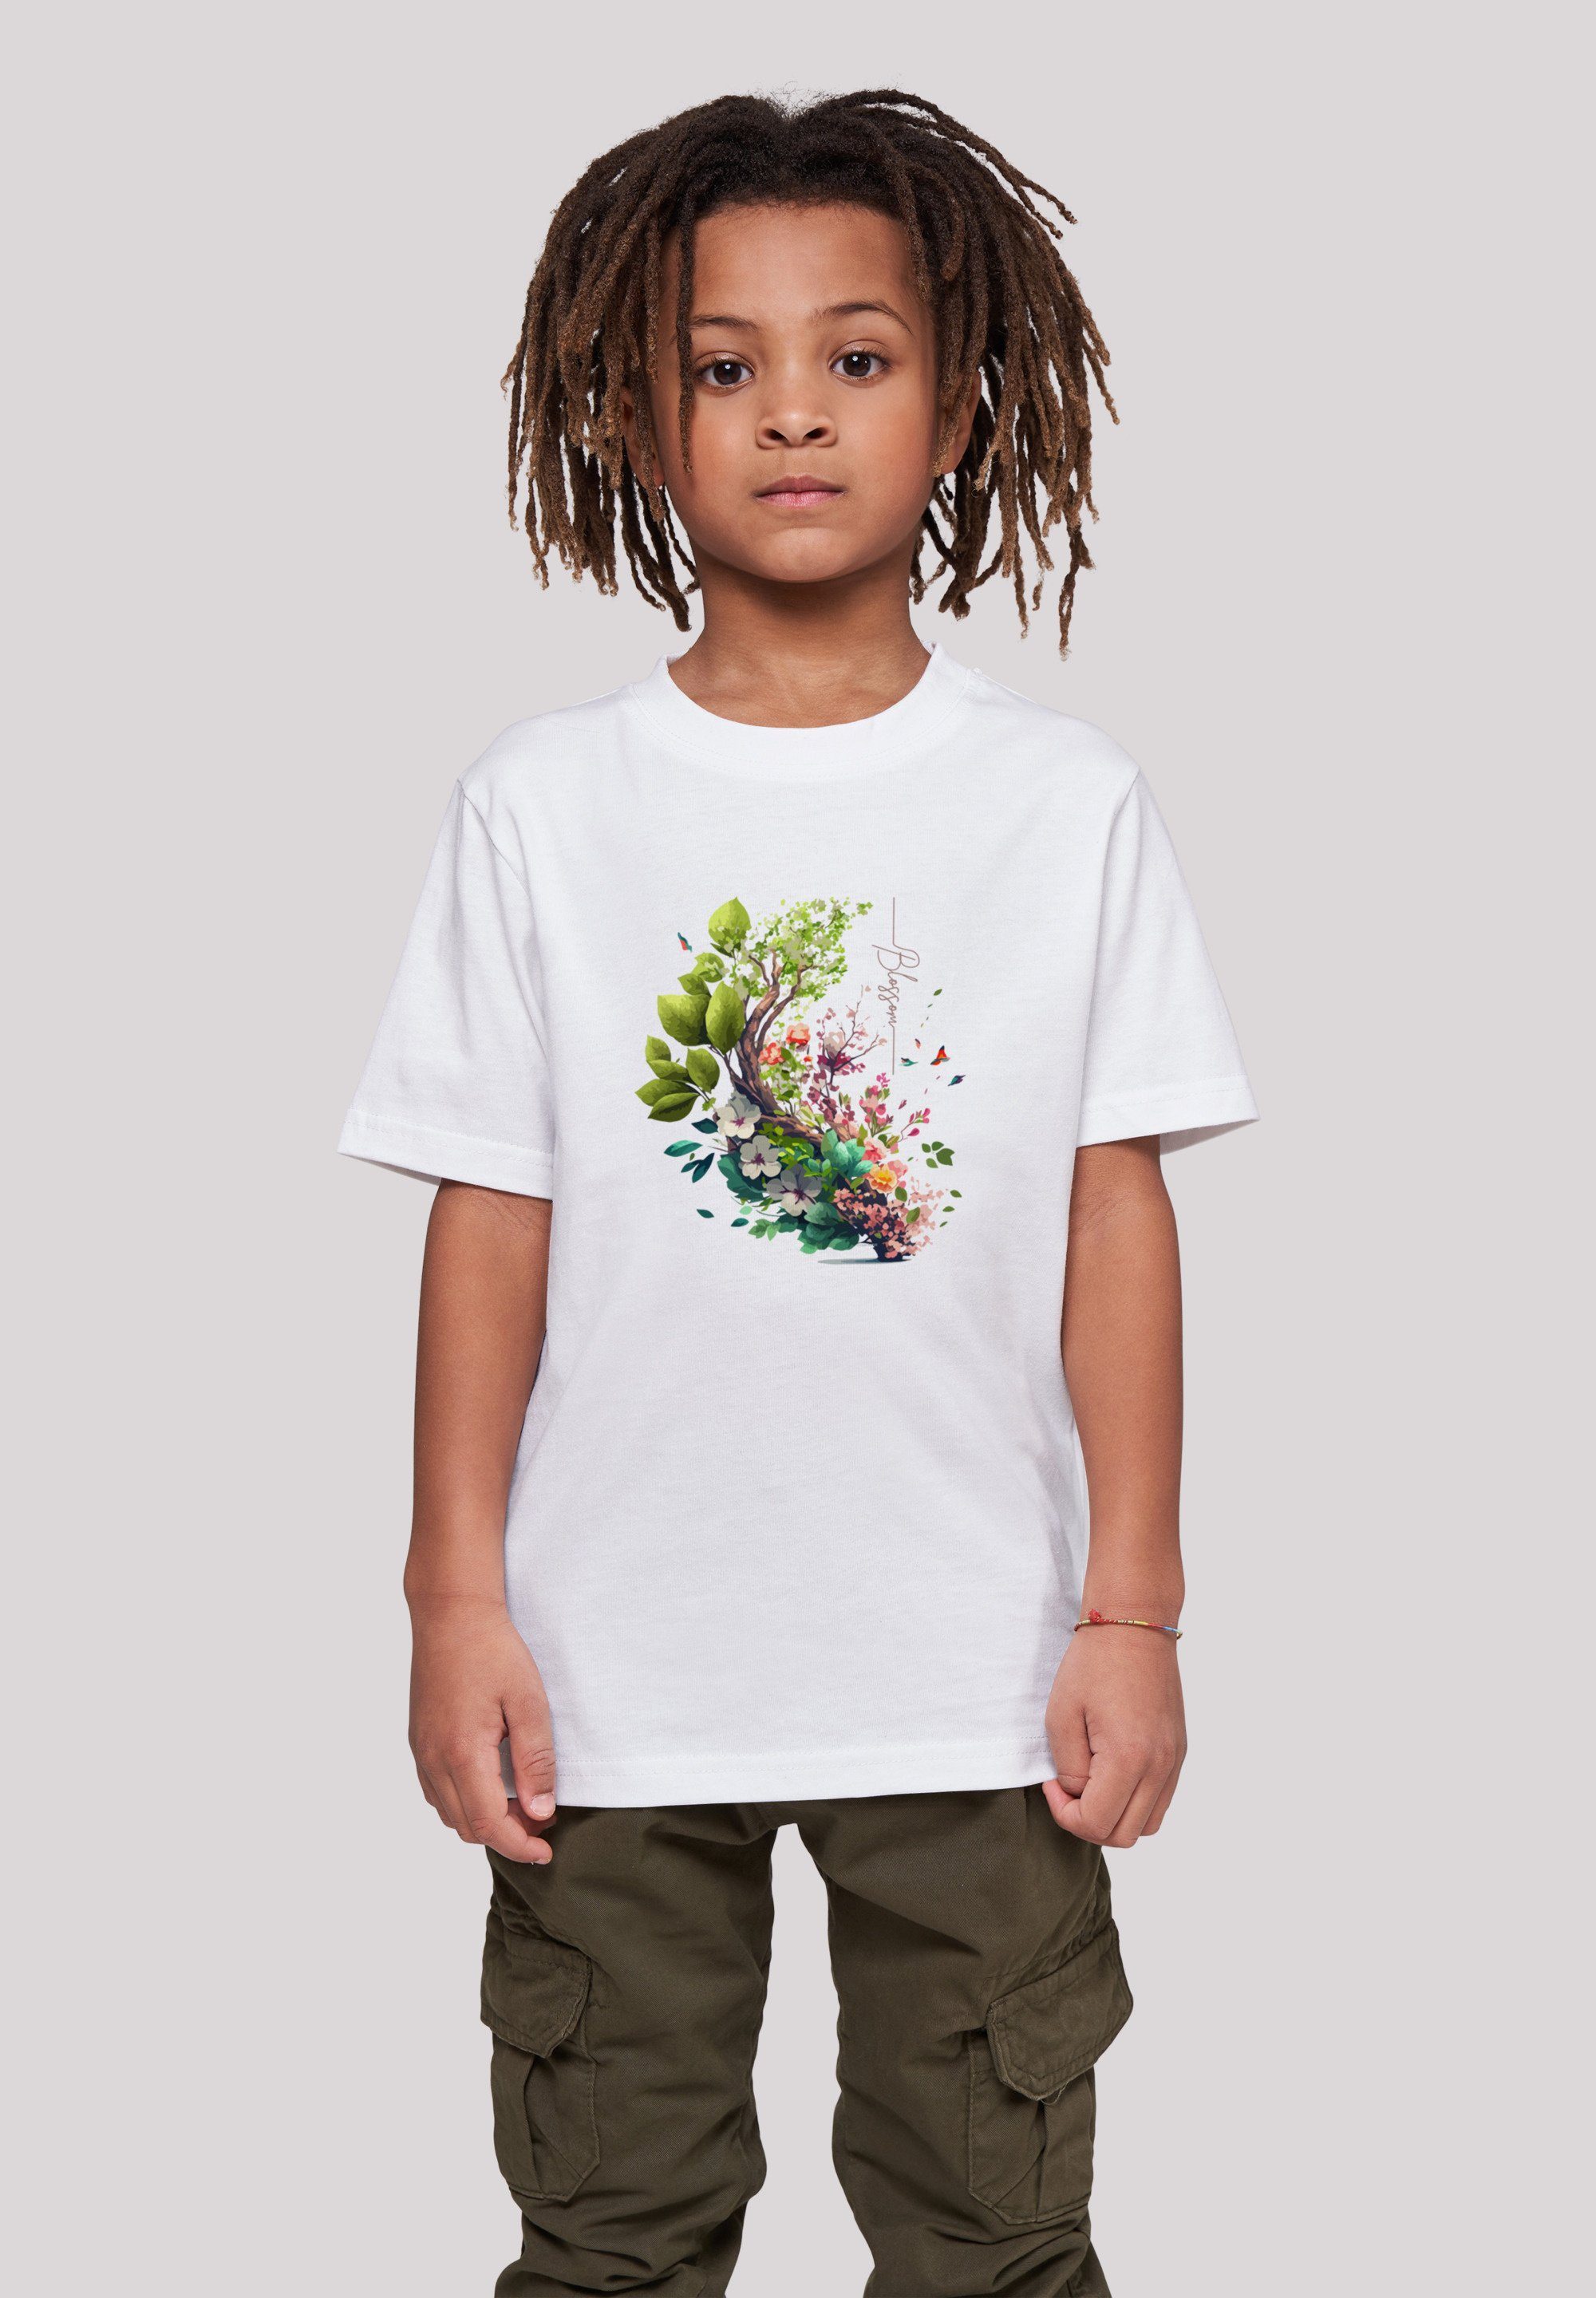 Print F4NT4STIC Blumen T-Shirt Tee Unisex weiß mit Baum